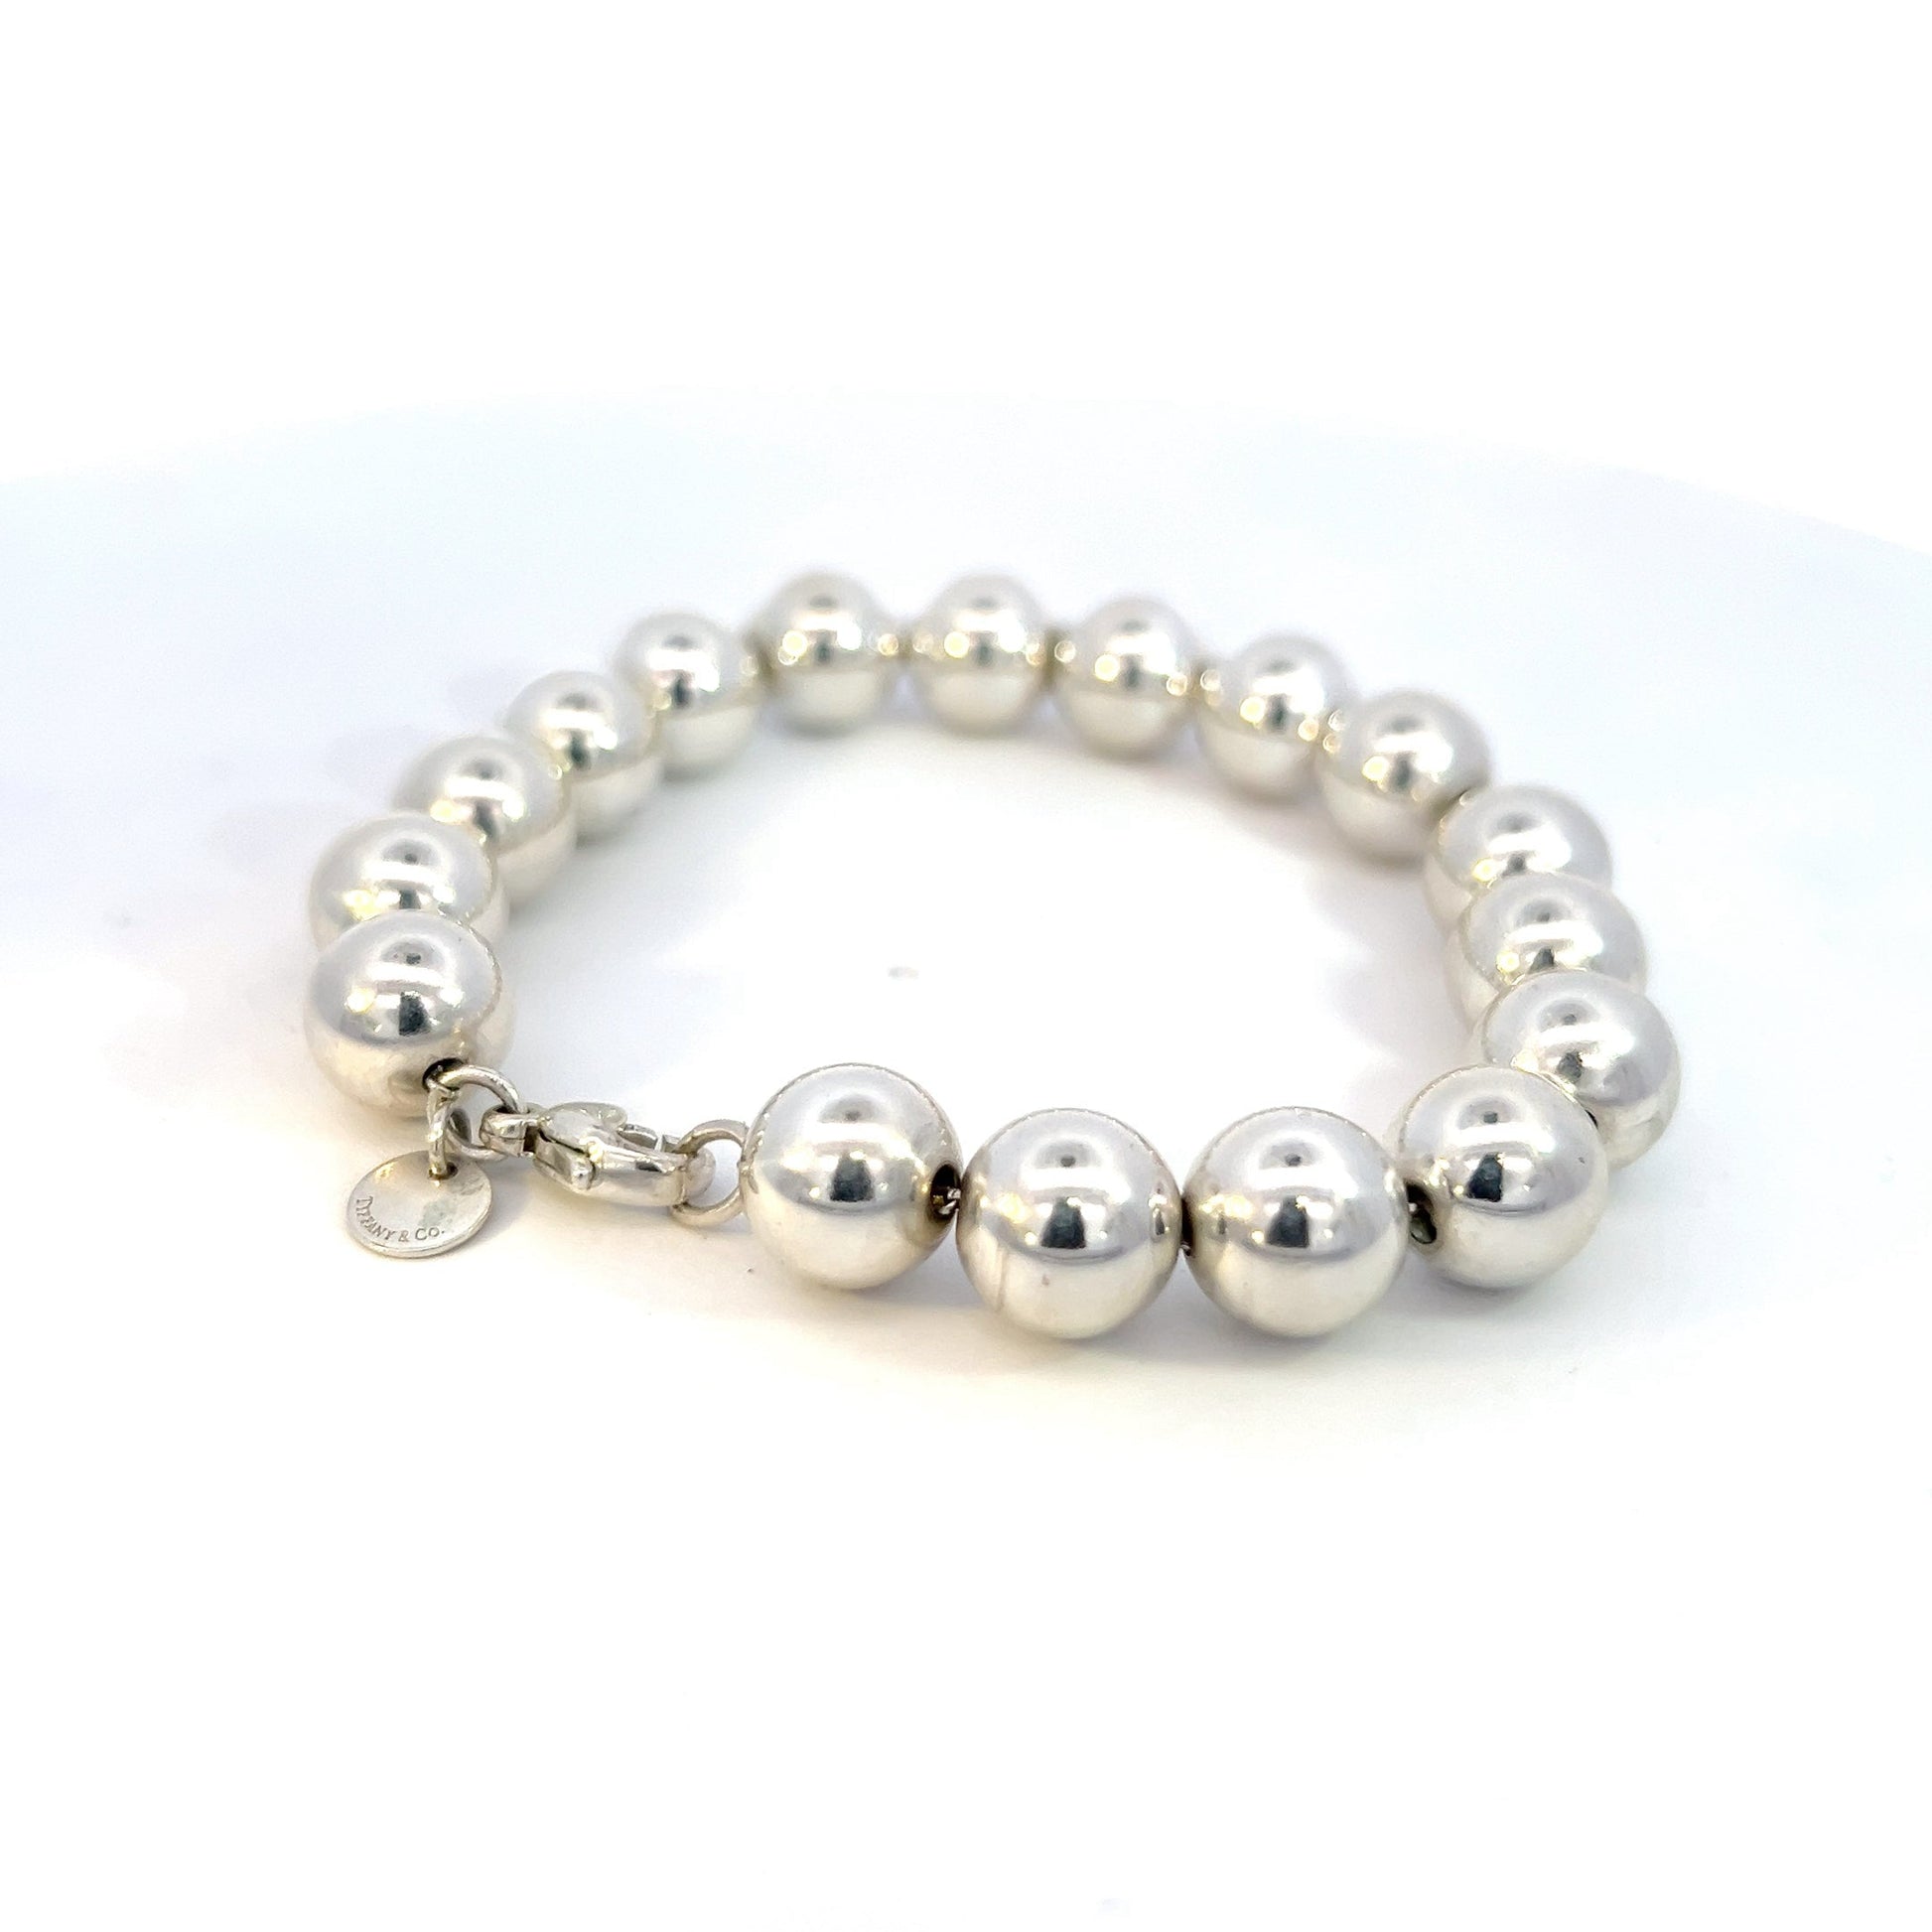 Tiffany & Co Estate 10 mm Ball Bracelet Size 7.5" Sterling Silver TIF591 - Certified Fine Jewelry